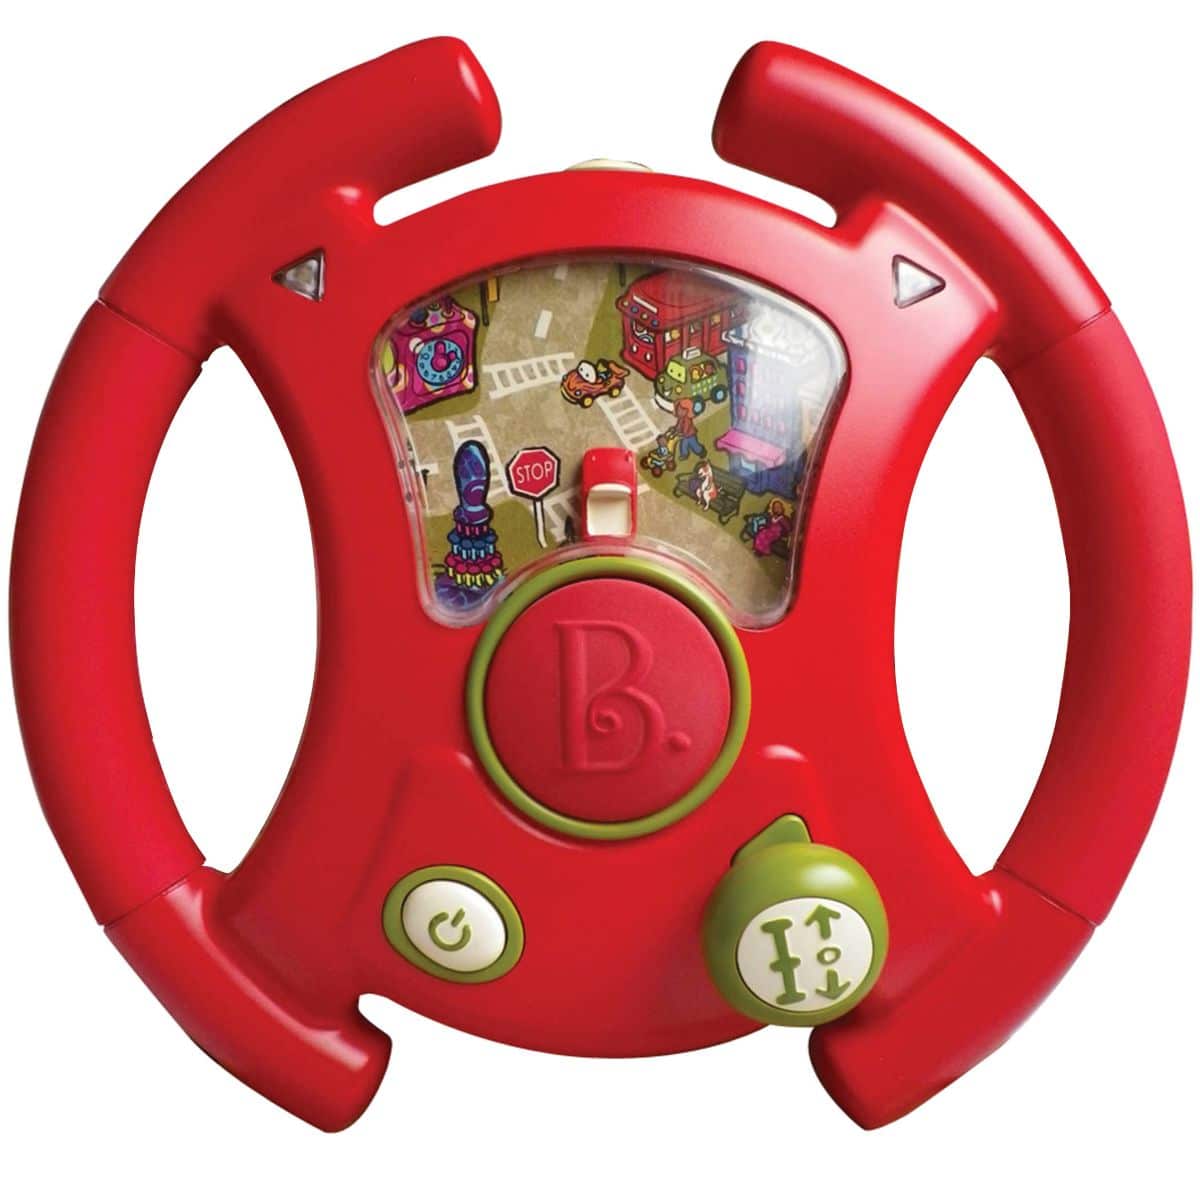 Toy steering wheel.